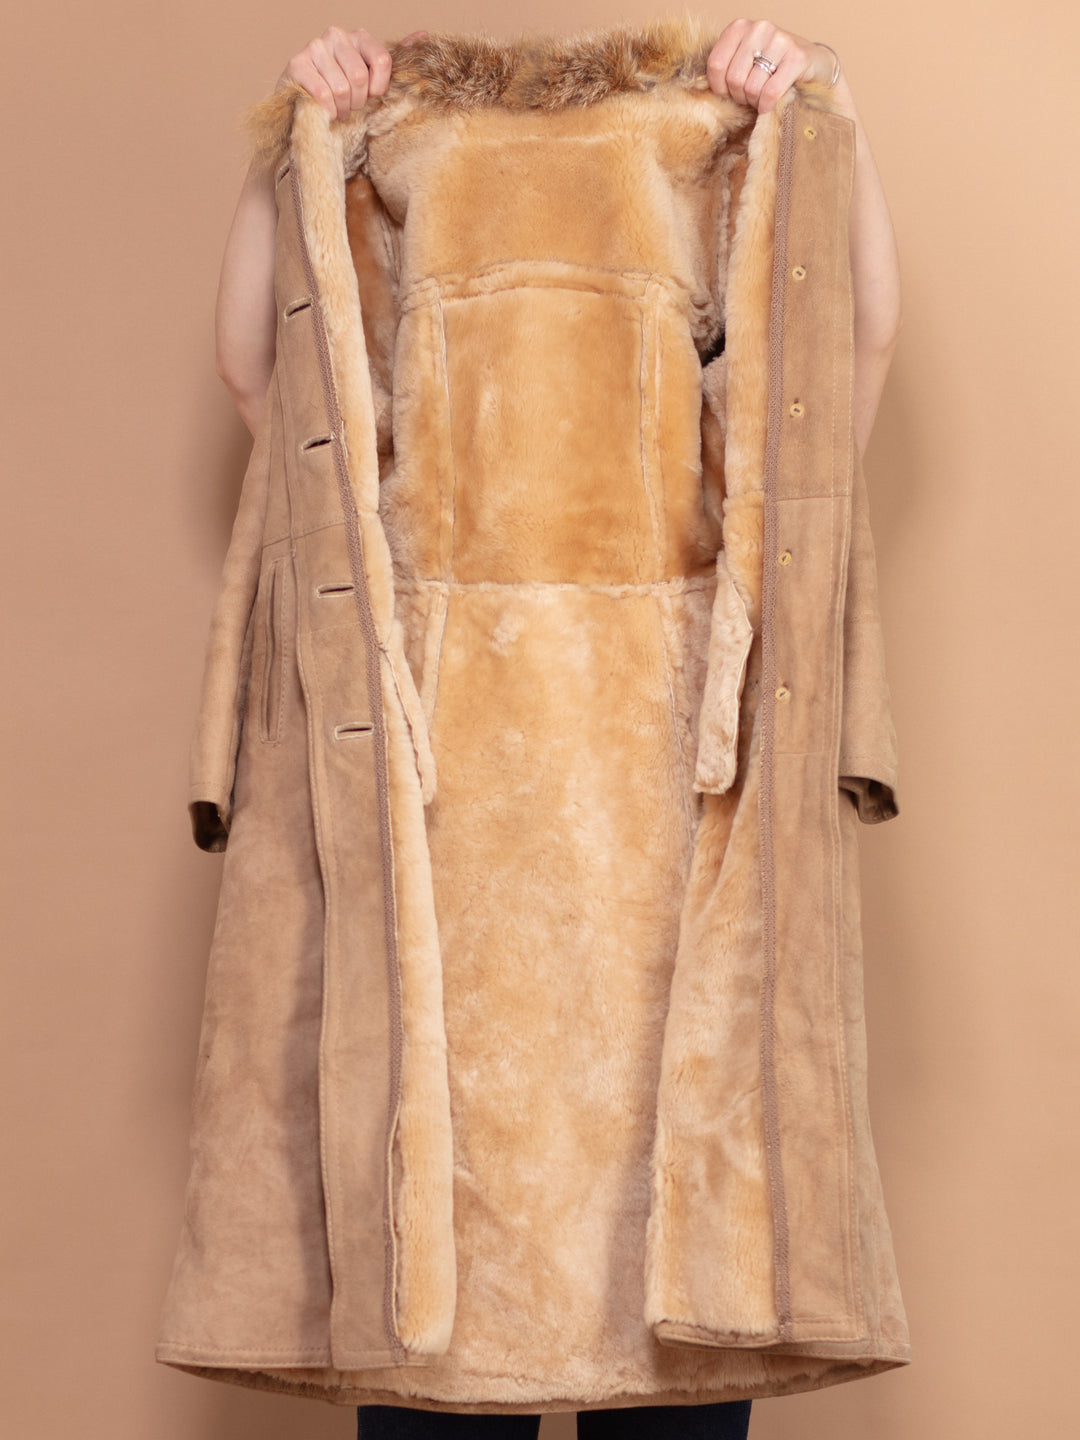 Sheepskin Fur Coat 70's, Size Small, Sheepskin Fur Coat, Beige Sheepskin Winter Coat, Sheepskin Suede Long Coat, Boho Western Hippie Coat